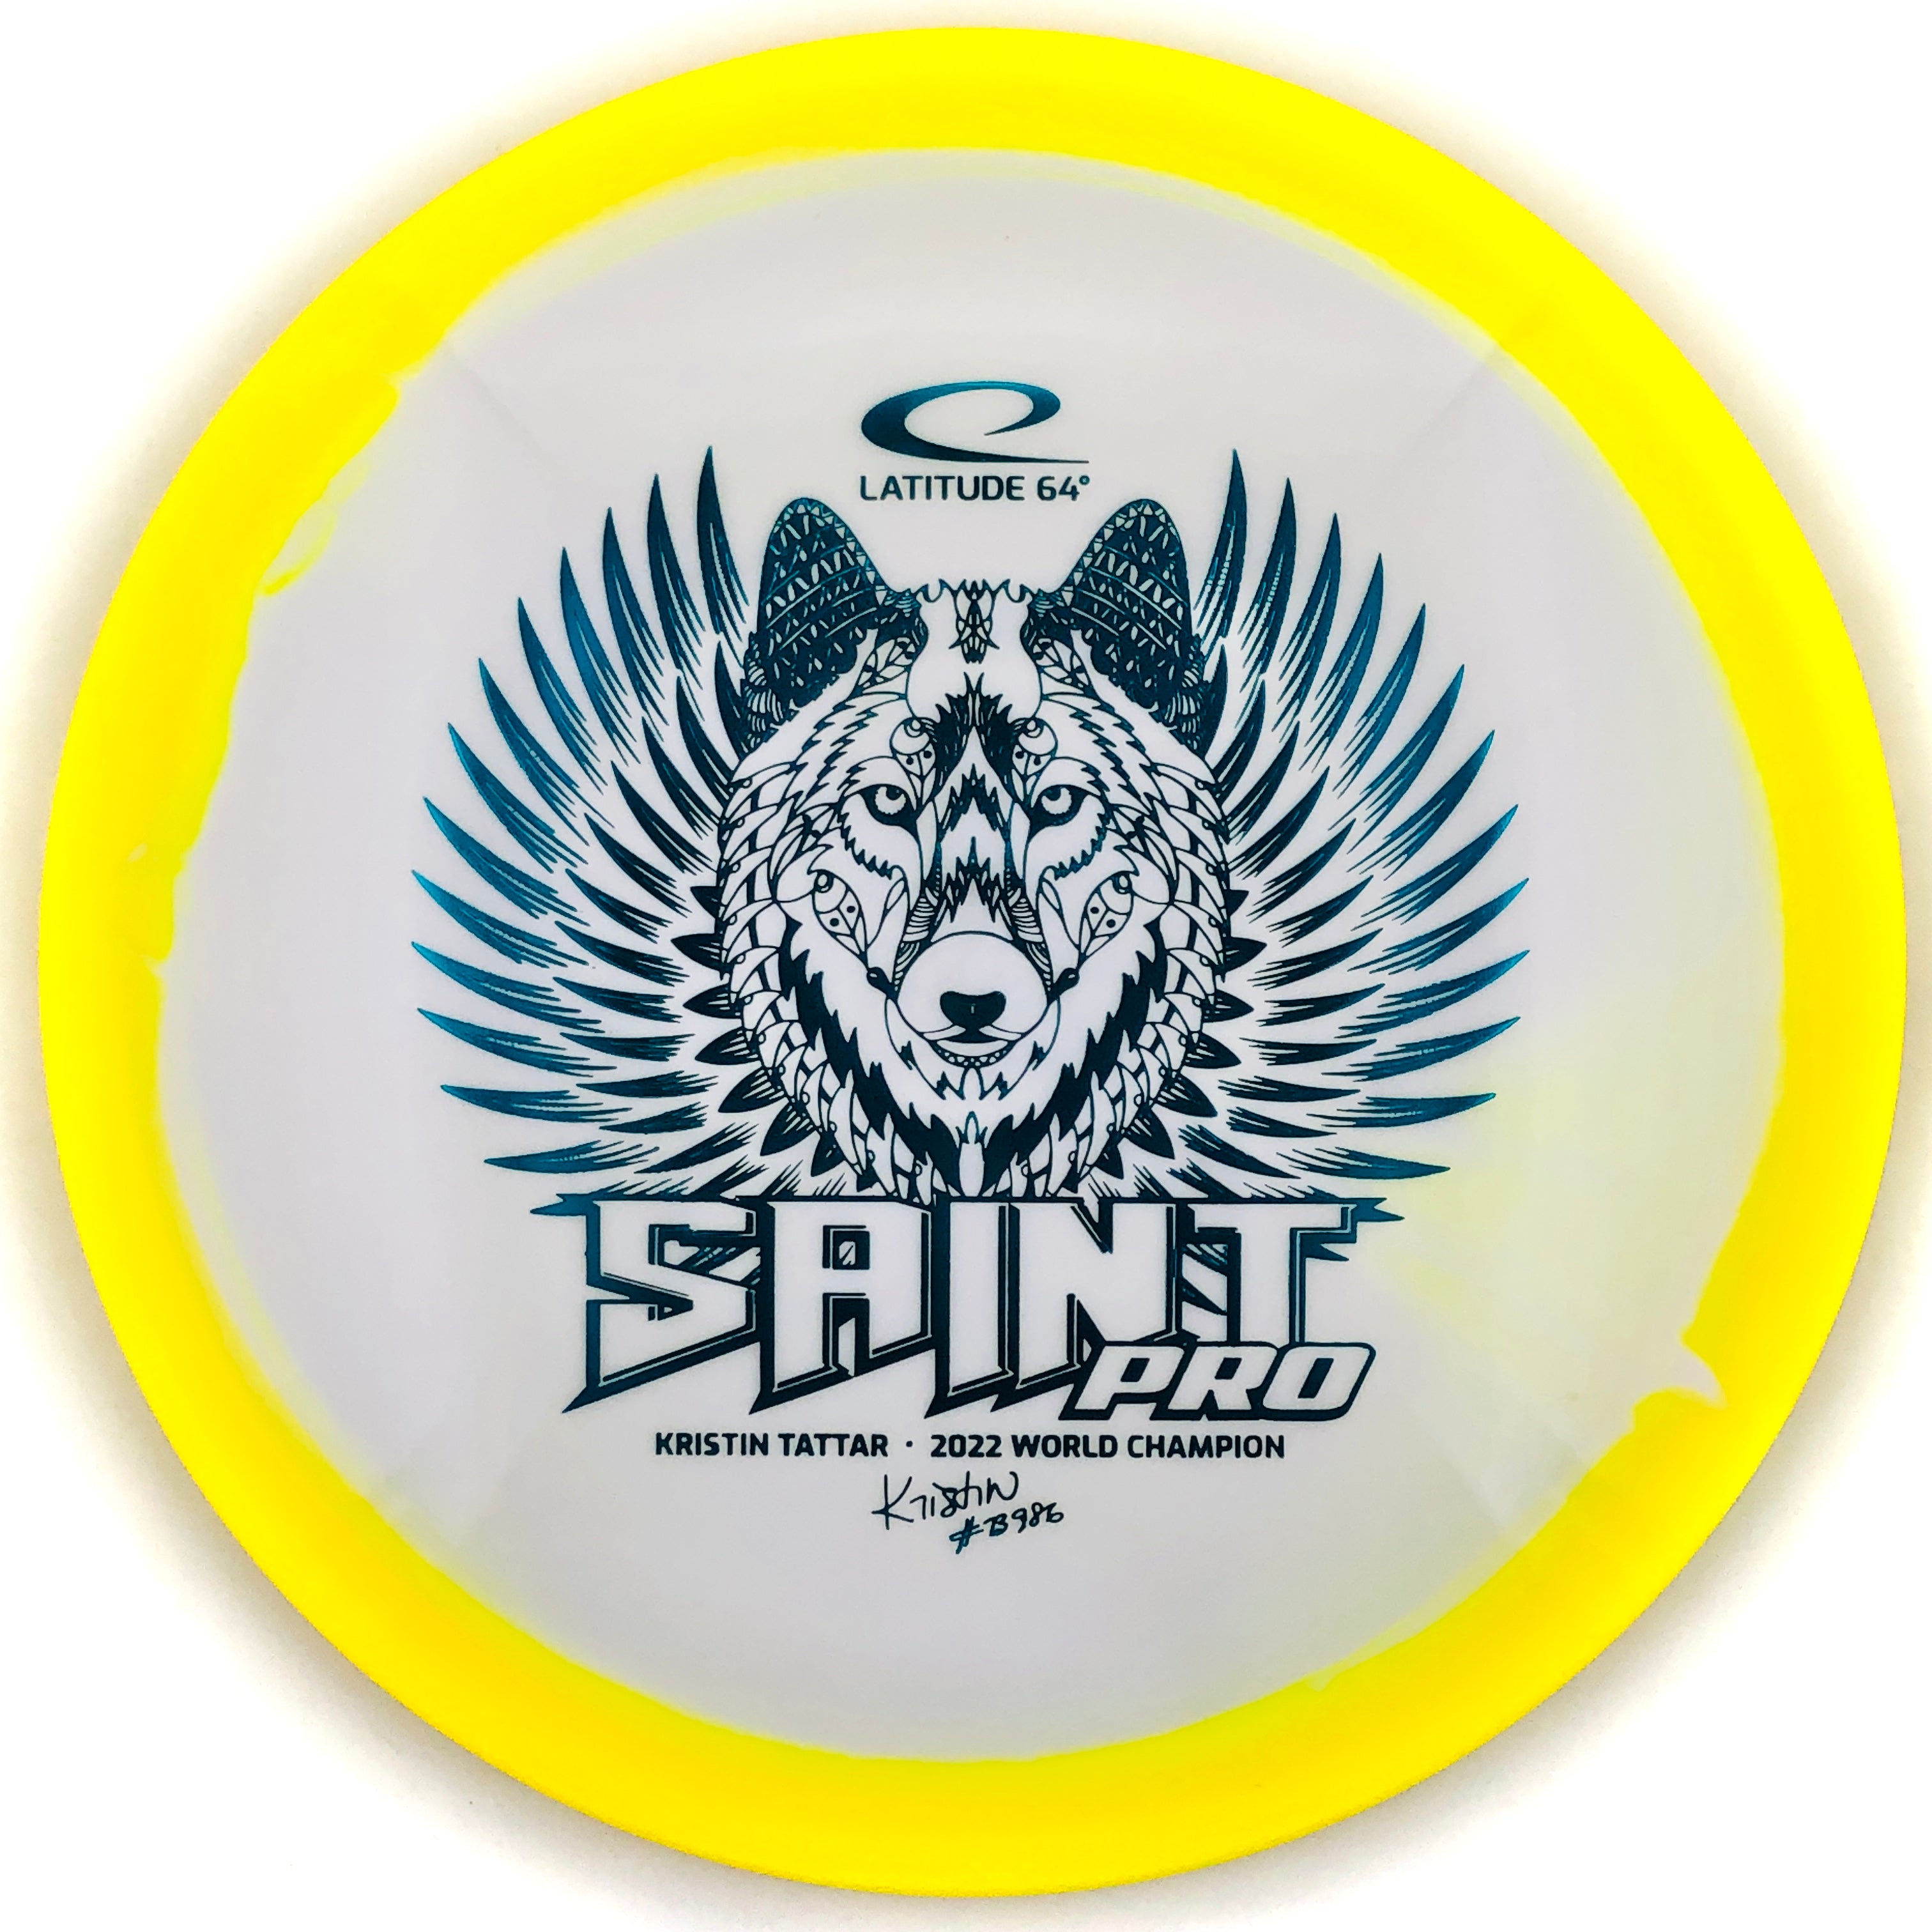 Latitude 64 Gold Orbit Saint Pro - Kristin Tattar 2022 World Champion (Fairway)